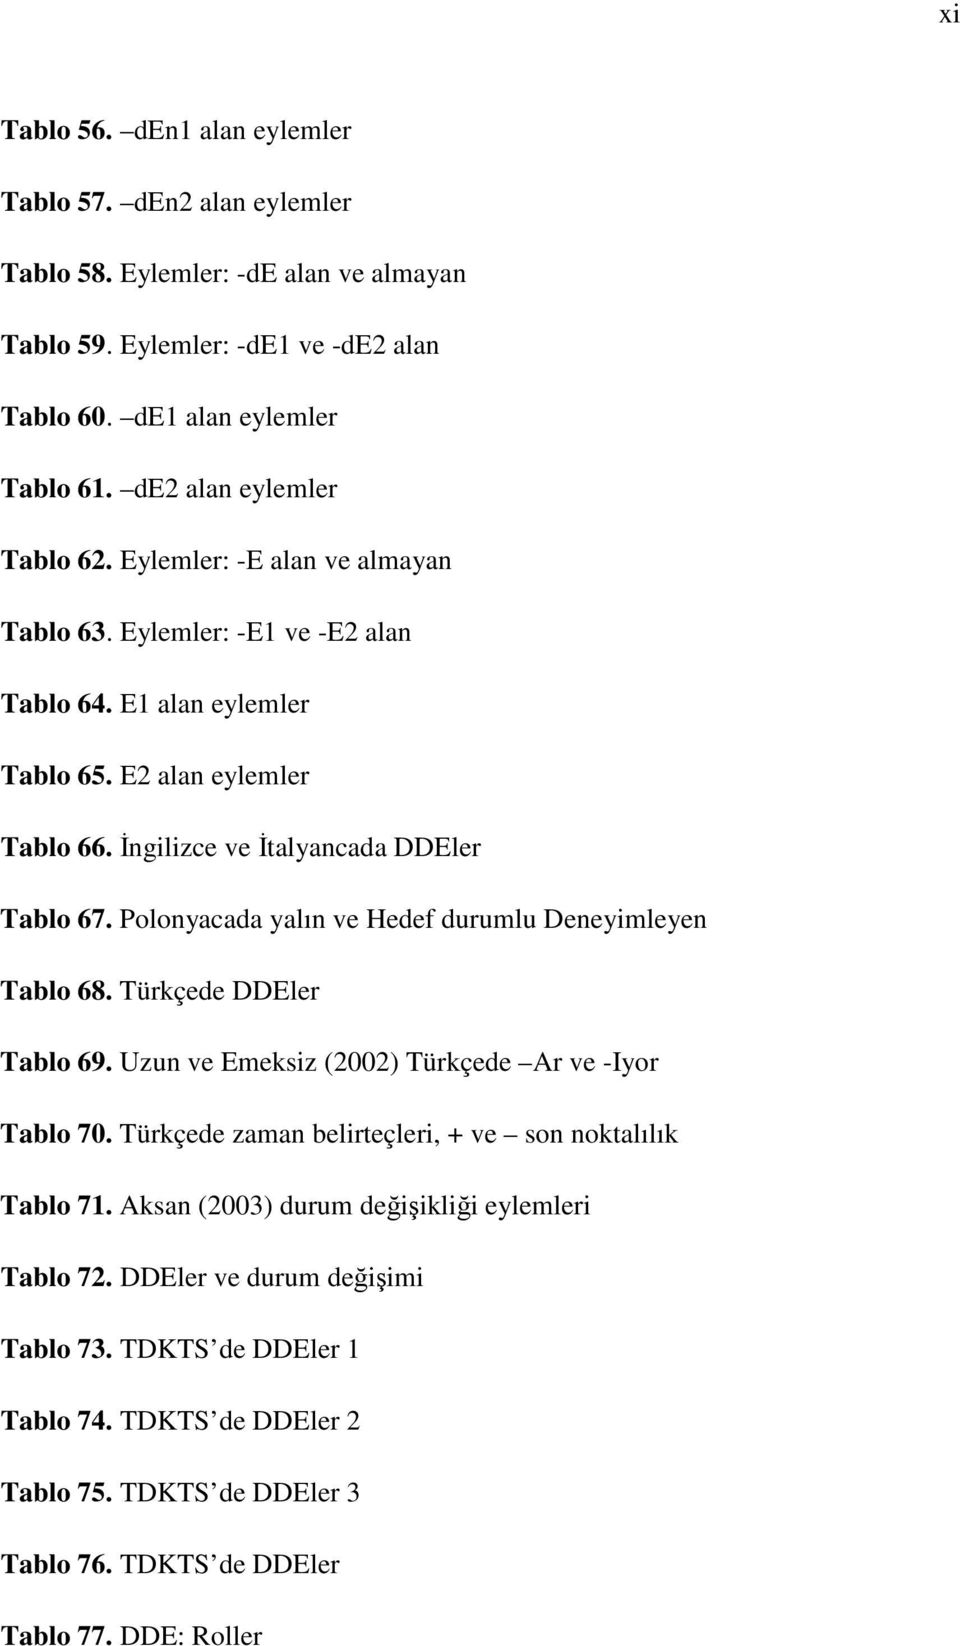 İngilizce ve İtalyancada DDEler Tablo 67. Polonyacada yalın ve Hedef durumlu Deneyimleyen Tablo 68. Türkçede DDEler Tablo 69. Uzun ve Emeksiz (2002) Türkçede Ar ve -Iyor Tablo 70.